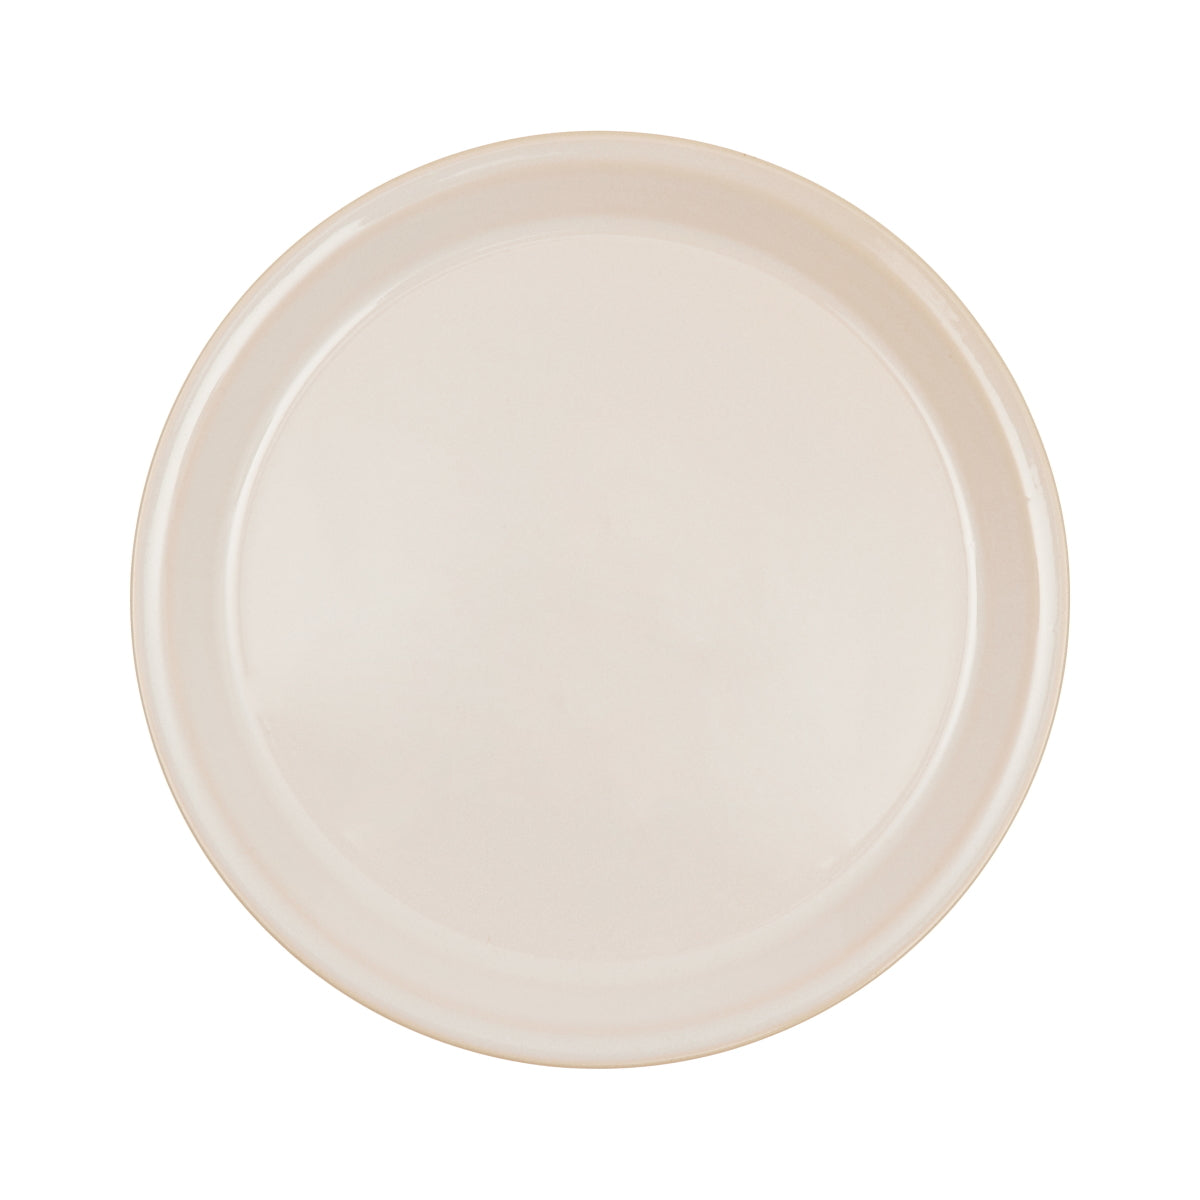 OYOY Yuka Ceramic Lunch Plate 2pk White